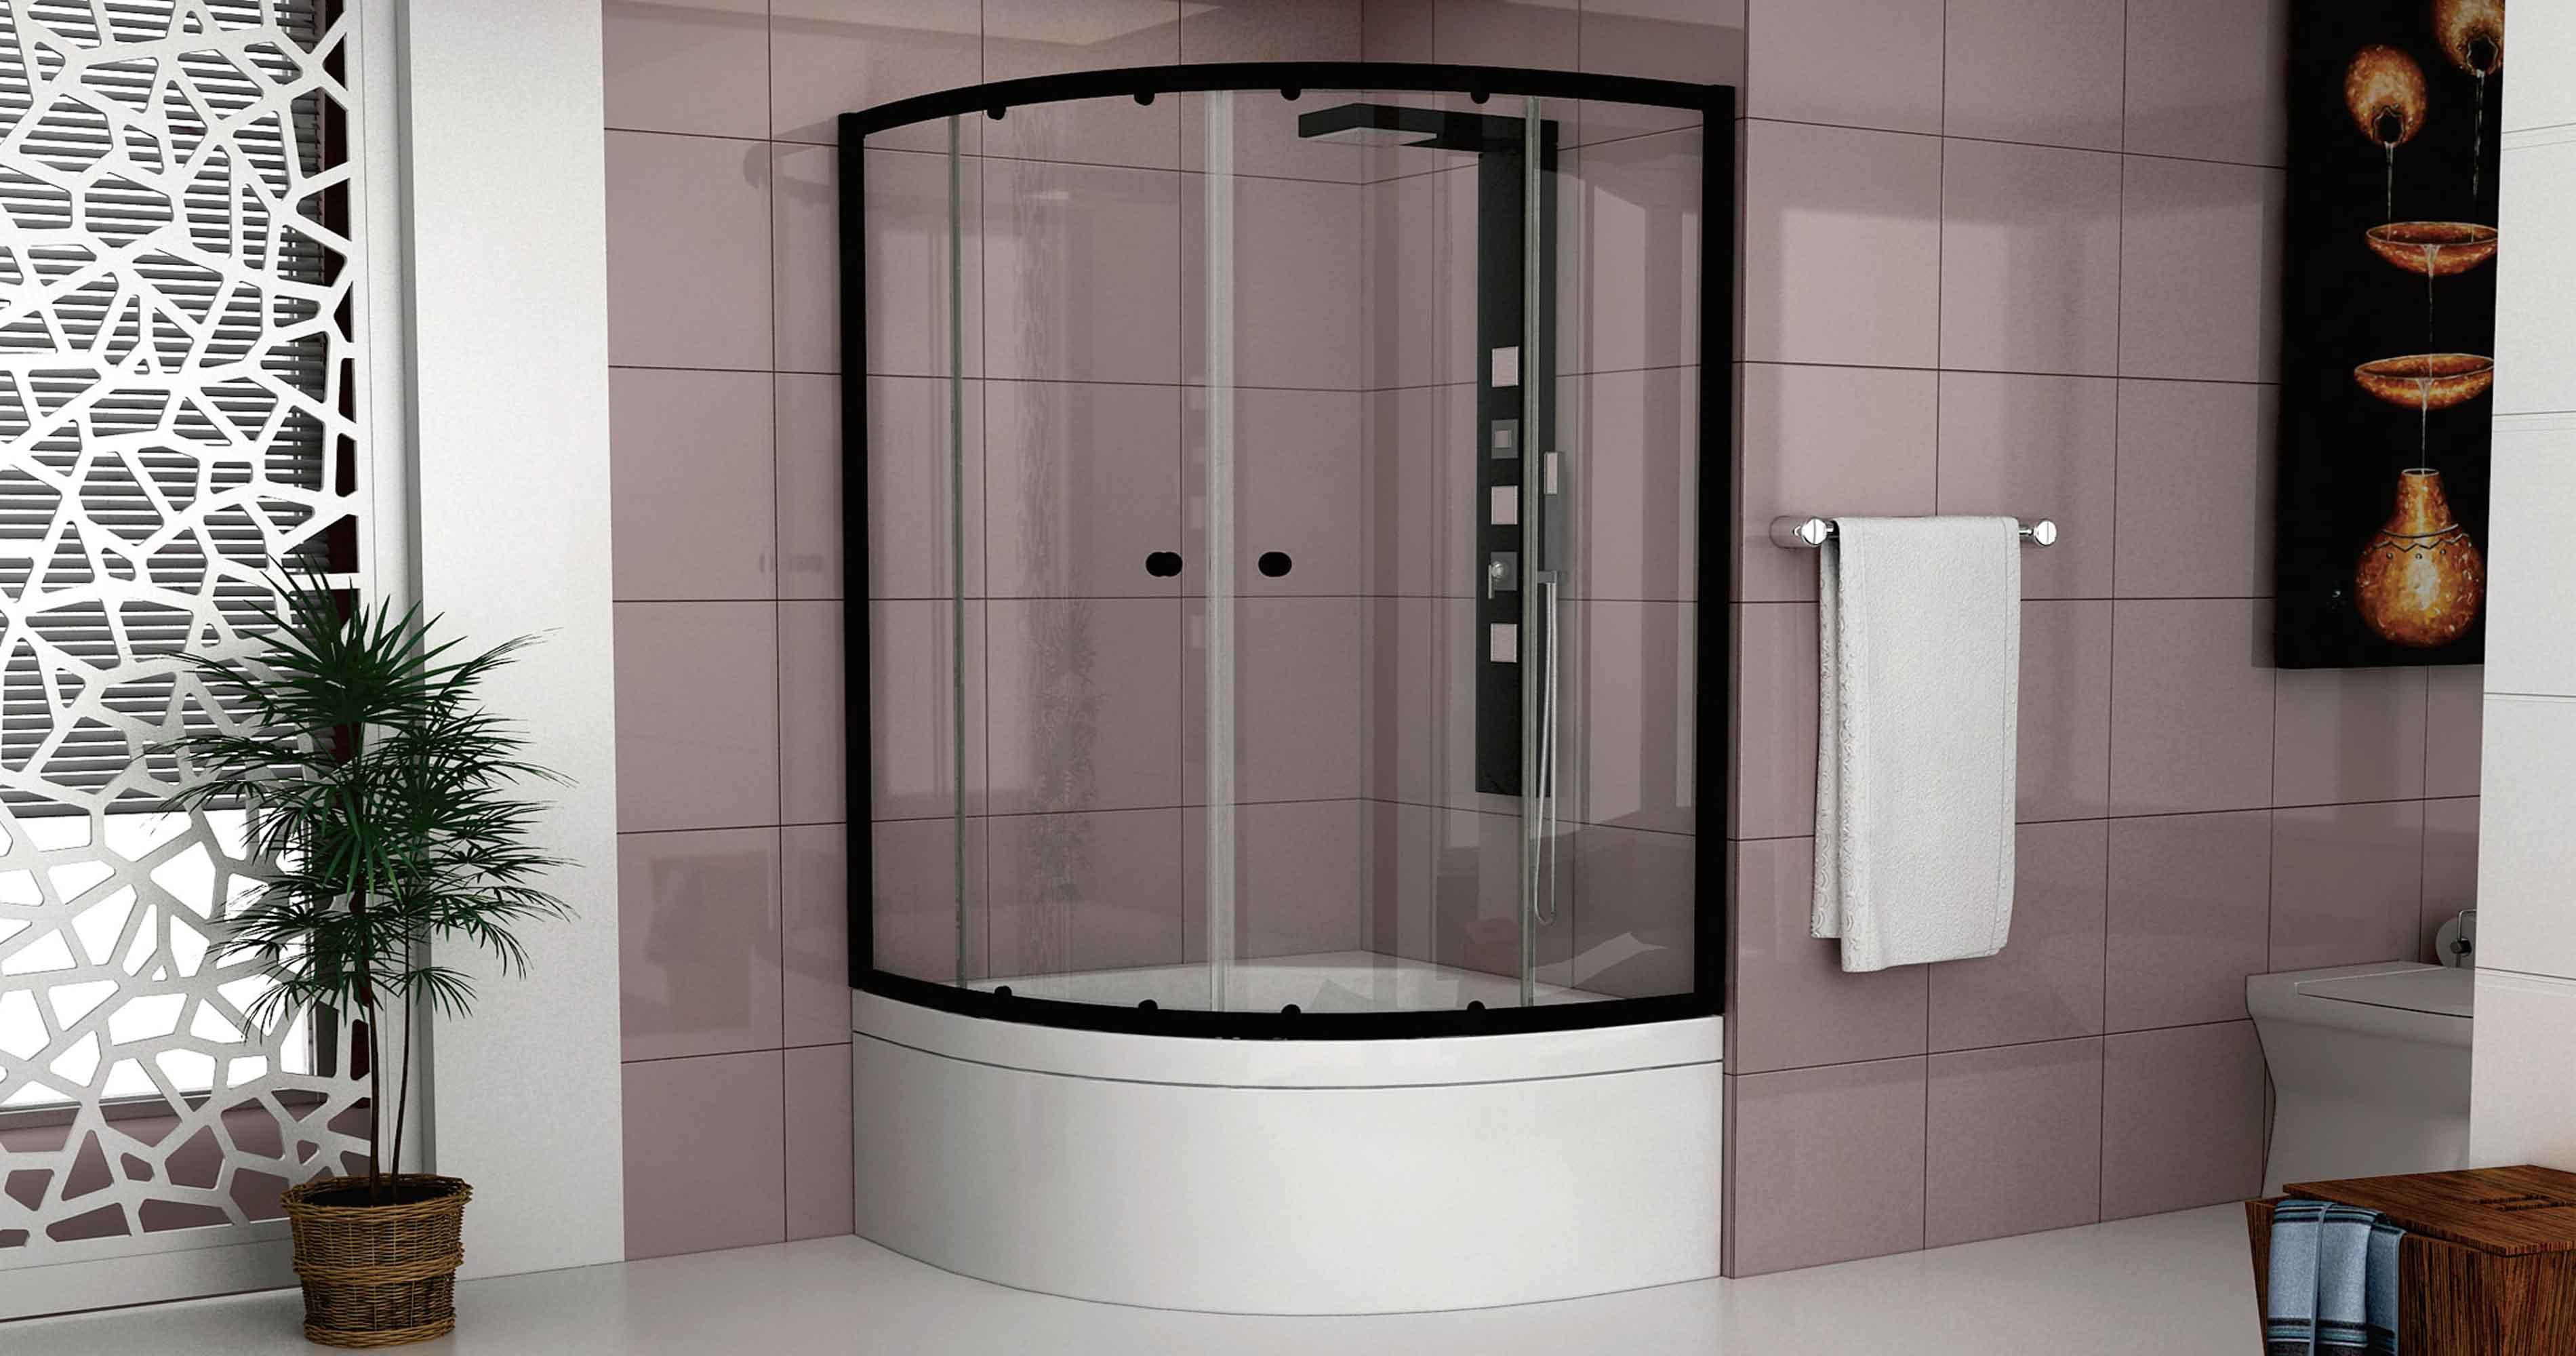 Duşakabin Sistemleri - Efor Cam & Ayna